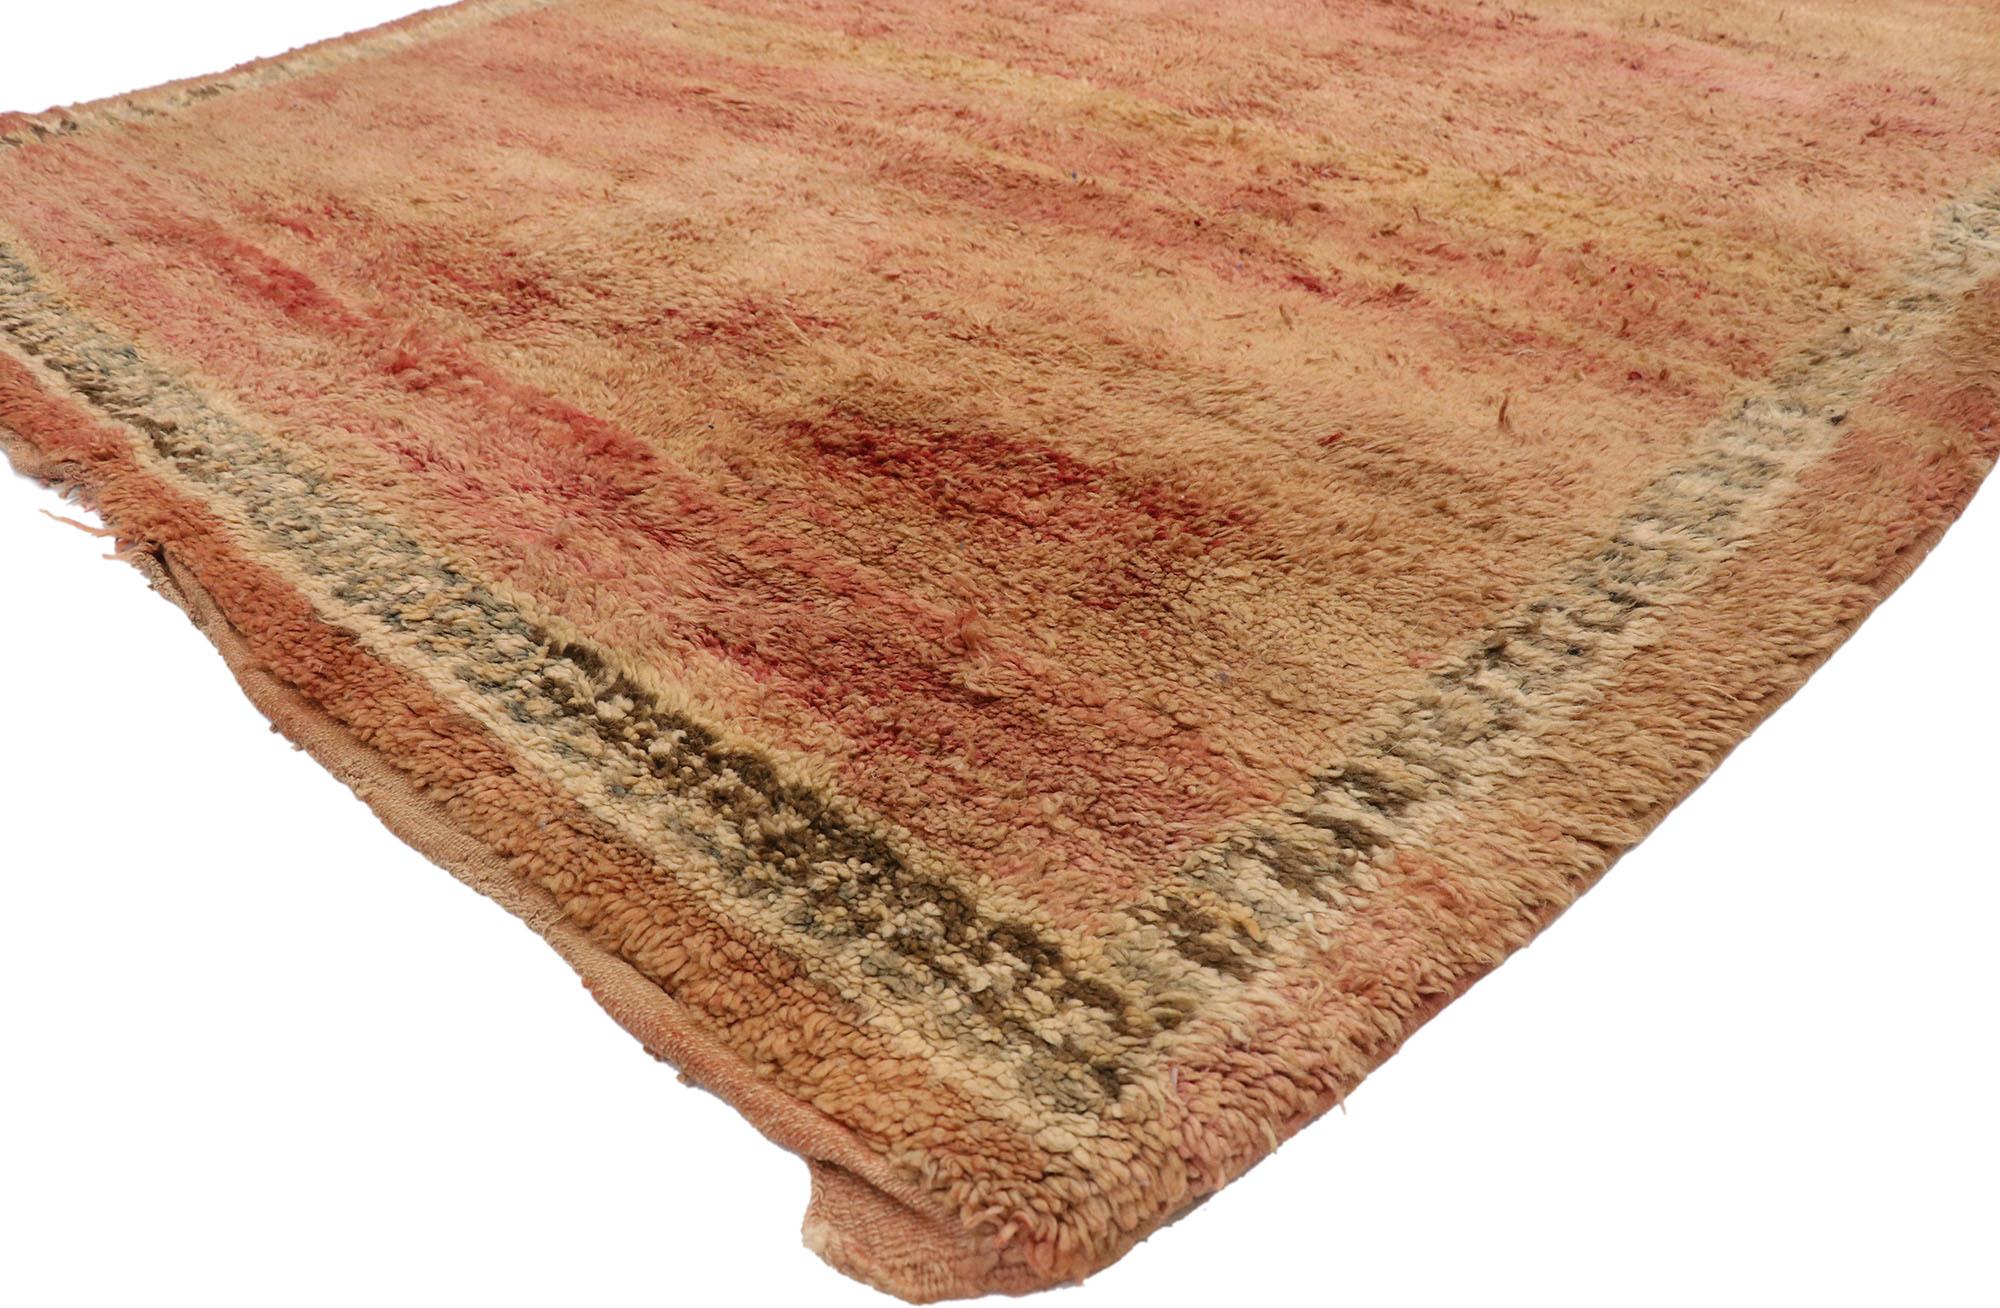 20907, tapis marocain berbère vintage au style chaleureux et rustique de style Mid-Century Modern. Ce tapis marocain berbère vintage en laine noué à la main est fonctionnel et polyvalent, tout en restant fidèle à l'esprit authentique de la culture